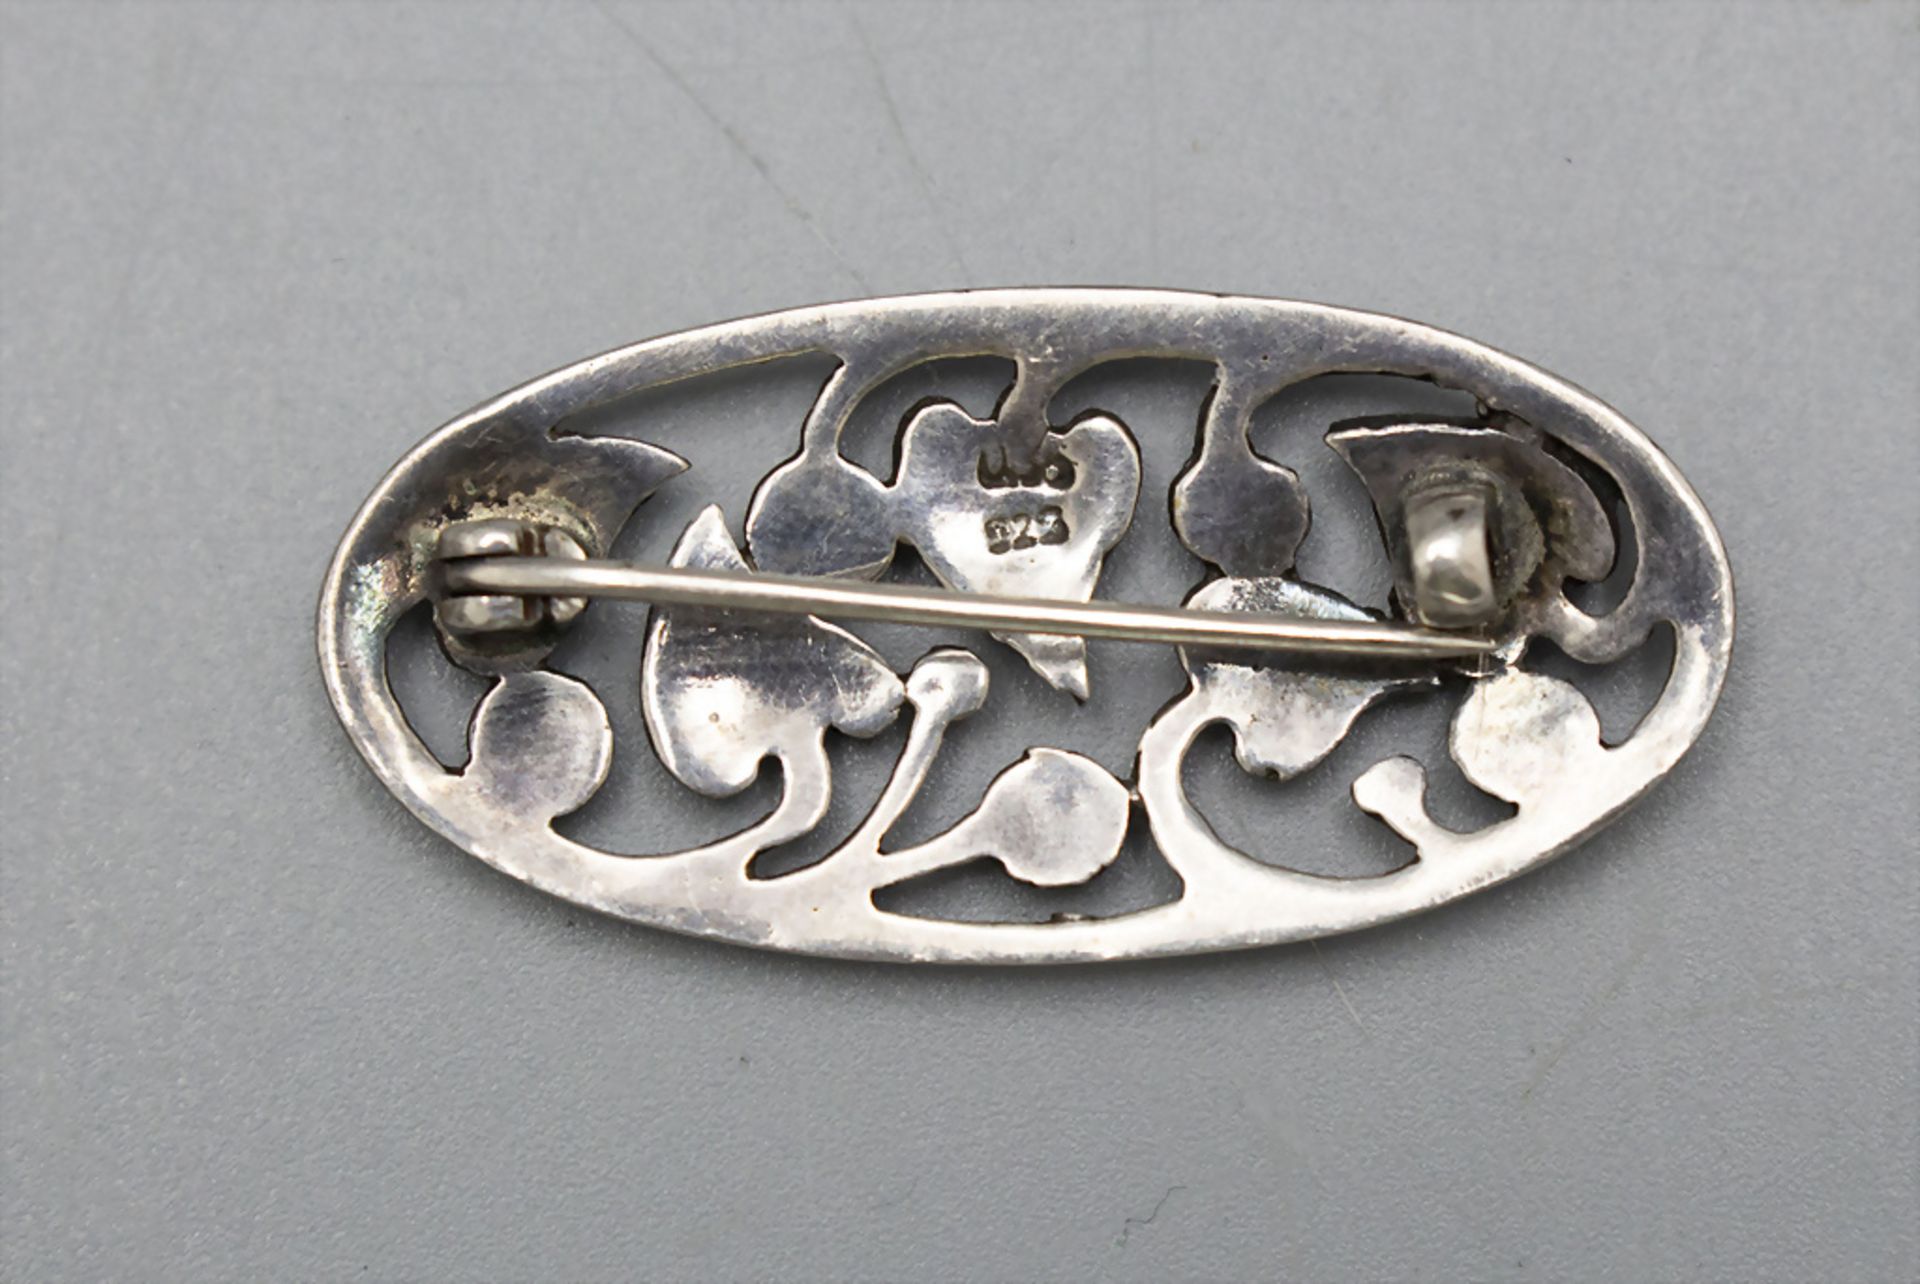 Jugendstil Brosche mit Efeu Blattdekor / An Art Nouveau Sterling silver brooch with ivy ... - Image 2 of 2